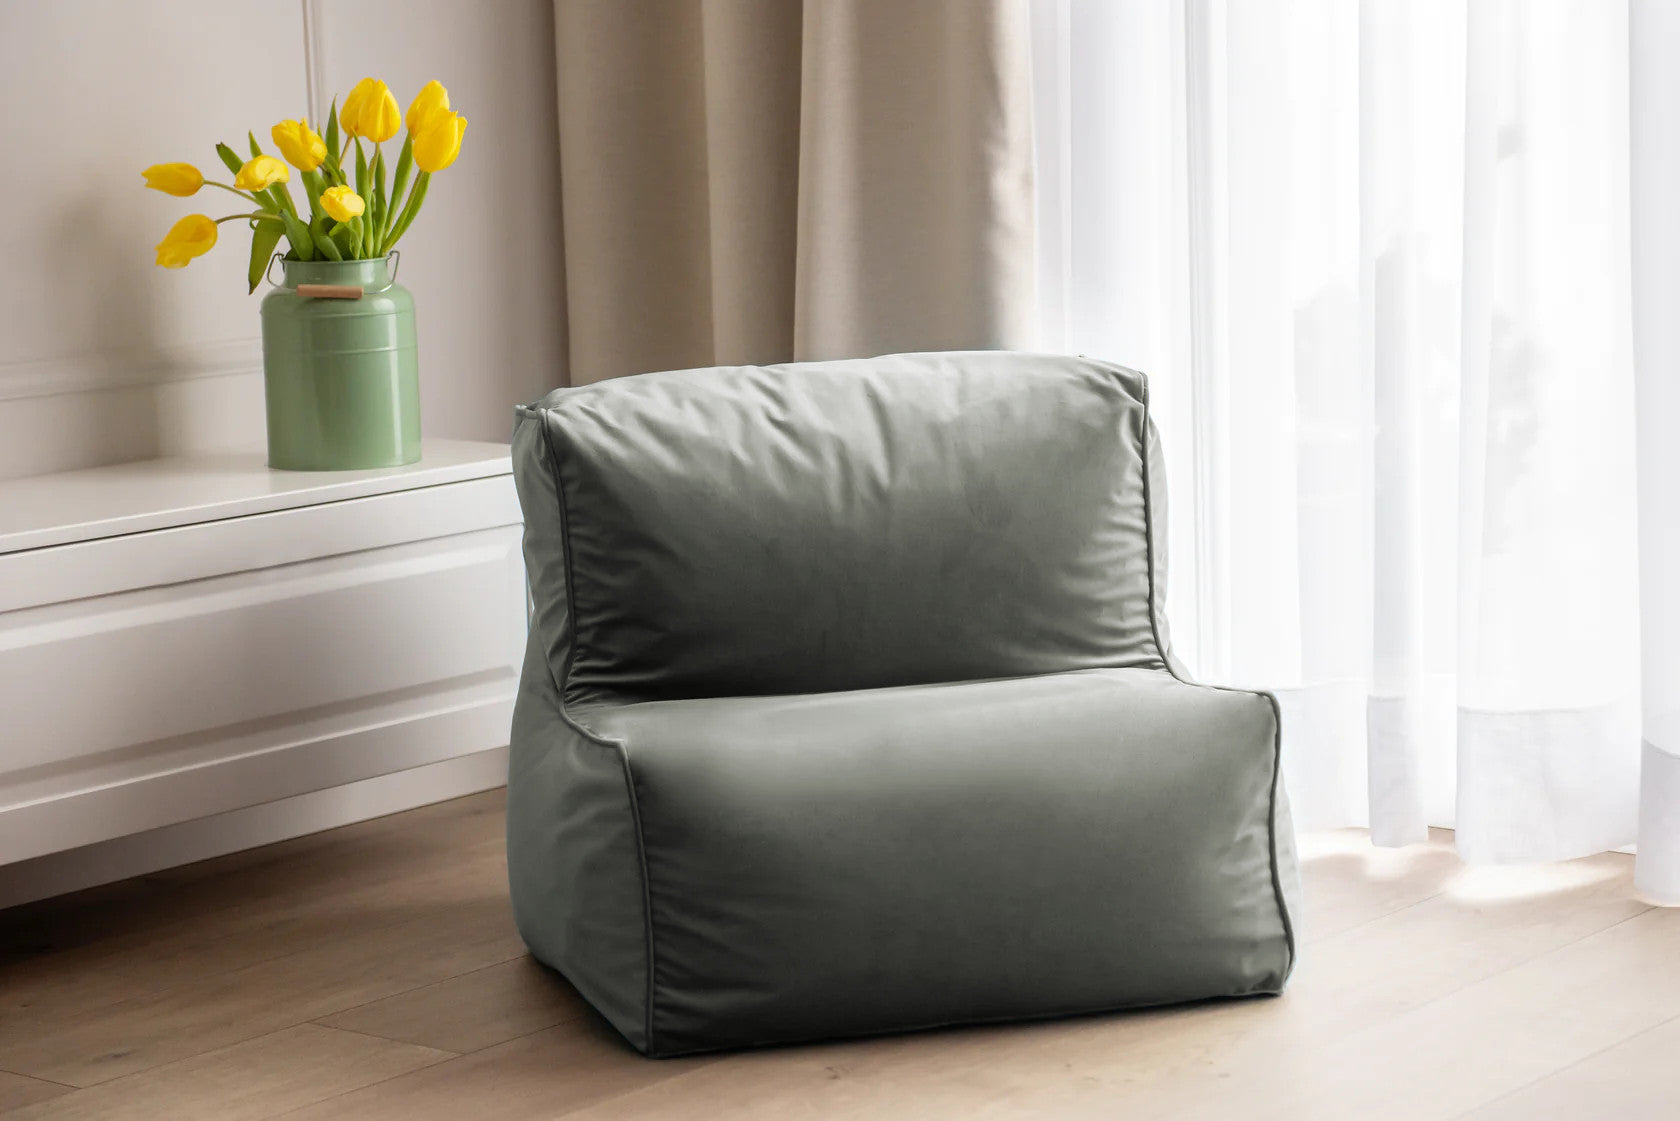 Modułowy Fotel Pufa ELKA Velvet - Aksamitny Komfort i Estetyka, Idealny Beanbag Worek do Siedzenia do Każdego Wnętrza, Dostępny w Różnych Kolorach